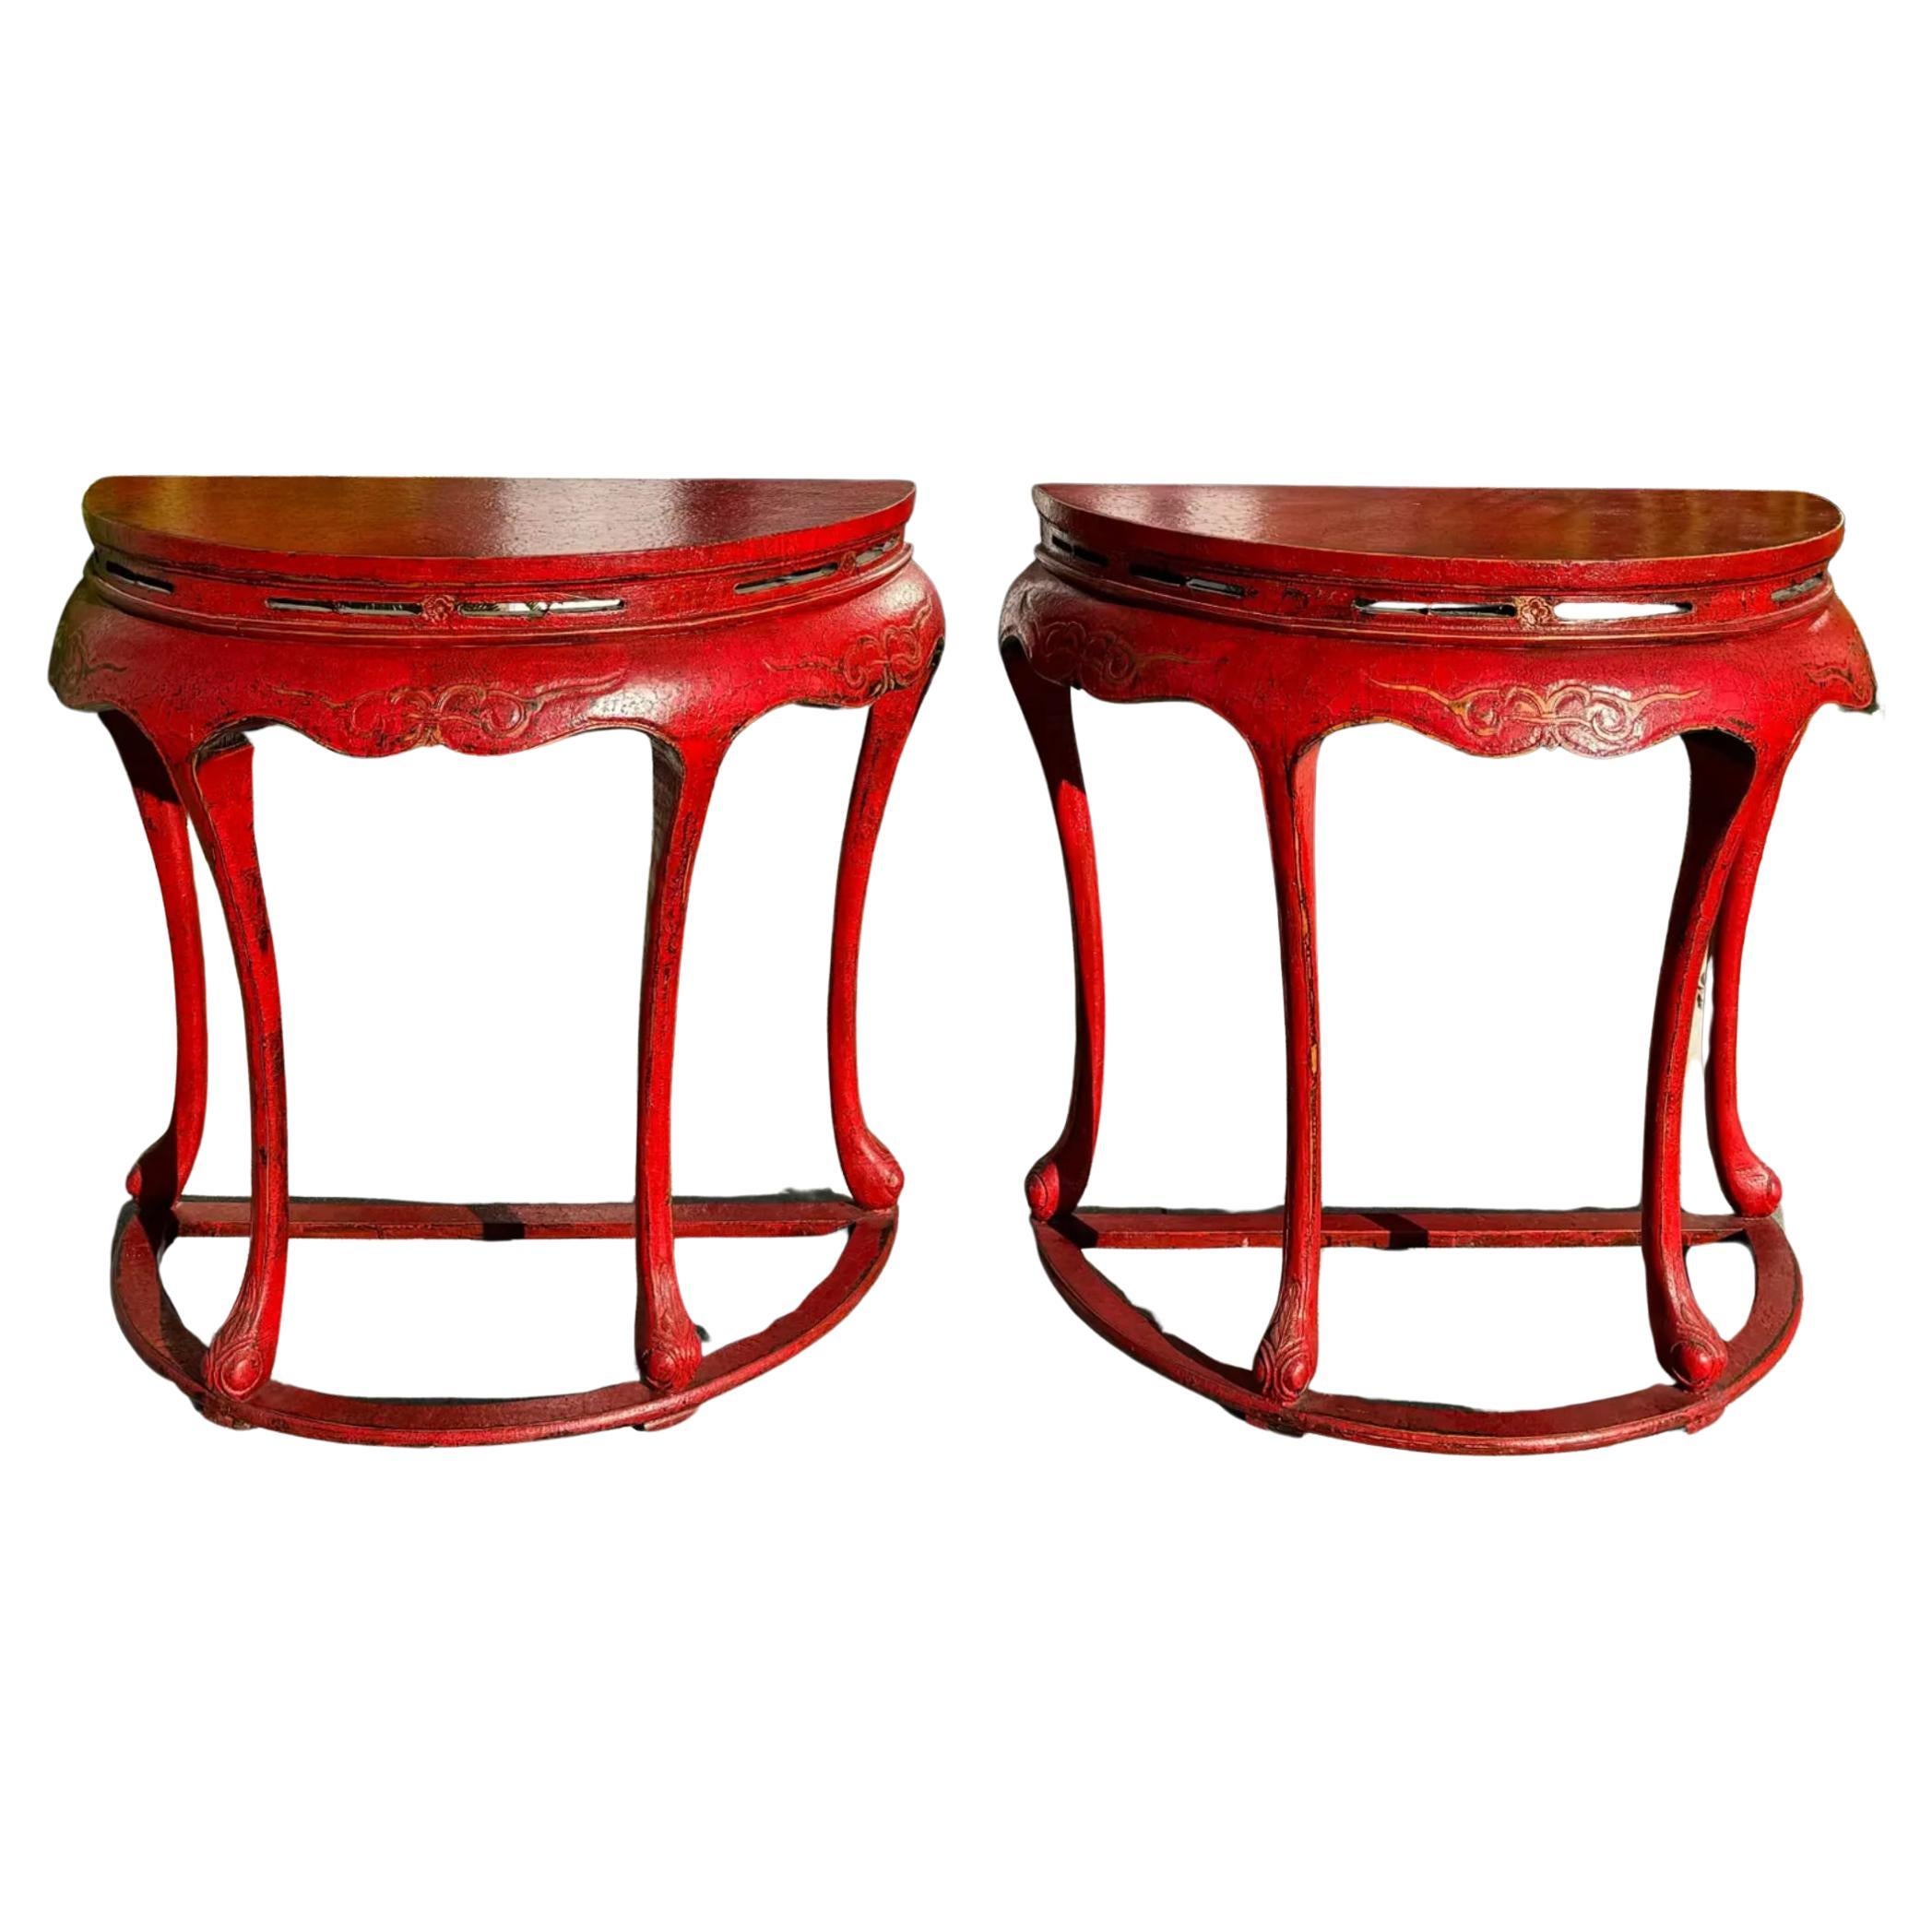 Paire de consoles ou tables centrales chinoiseries rouges de style Ming